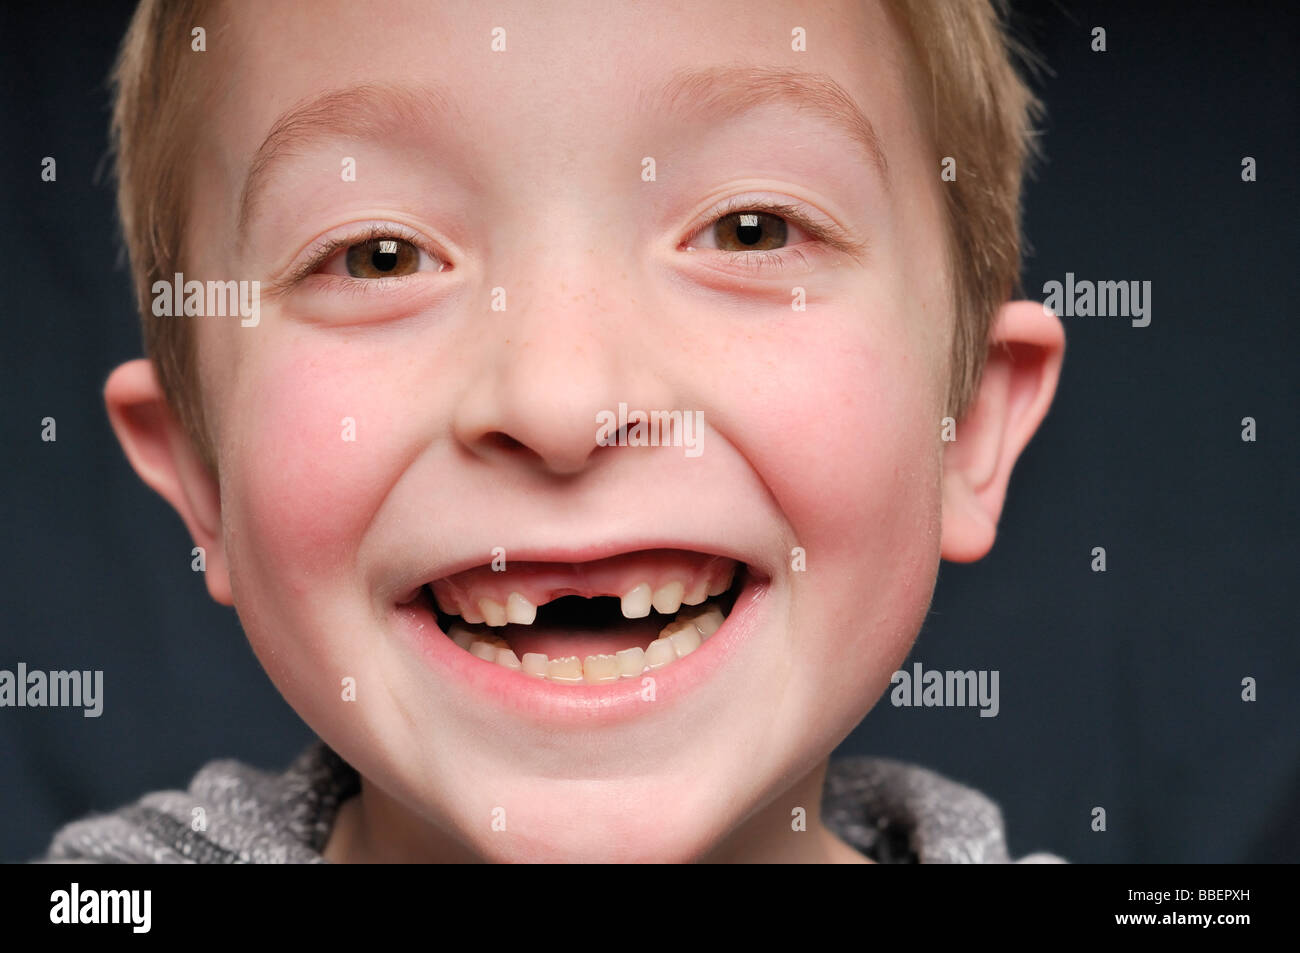 Porträt eines kleinen Jungen fehlen zwei Vorderzähne Stockfoto